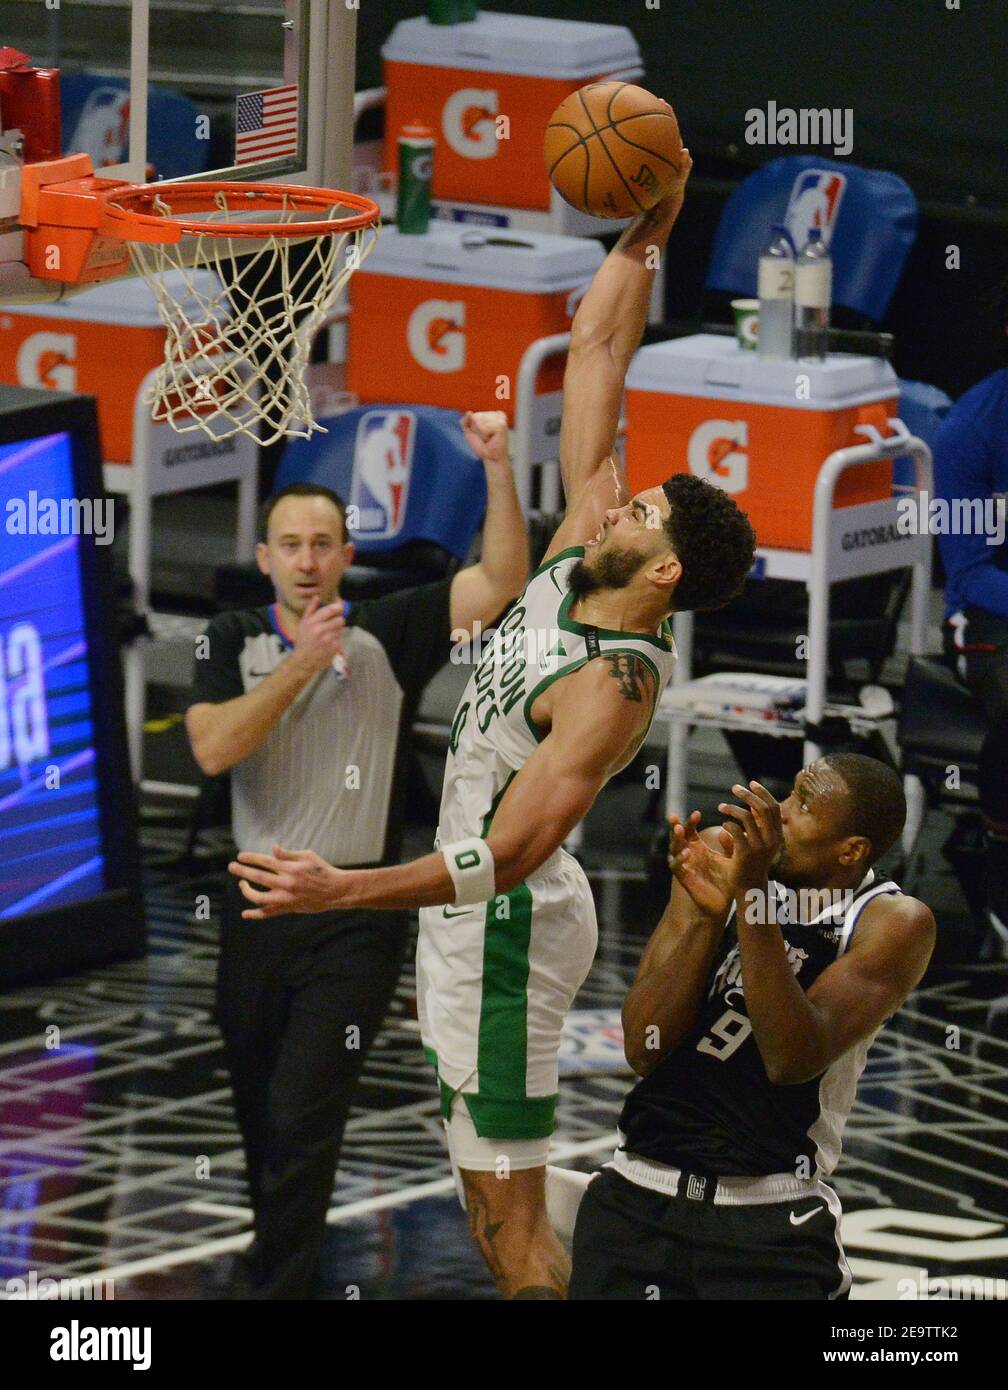 El delantero de Boston Celtics, Jayson Tatum, se sube por el pedazo sobre el centro de los Angeles Clippers, Derge Ibaka, durante el segundo cuarto en el Staples Center en los Angeles el viernes 5 de febrero de 2021. Los Celtics derrotaron a los Clippers 119-115. Foto de Jim Ruymen/UPI Foto de stock